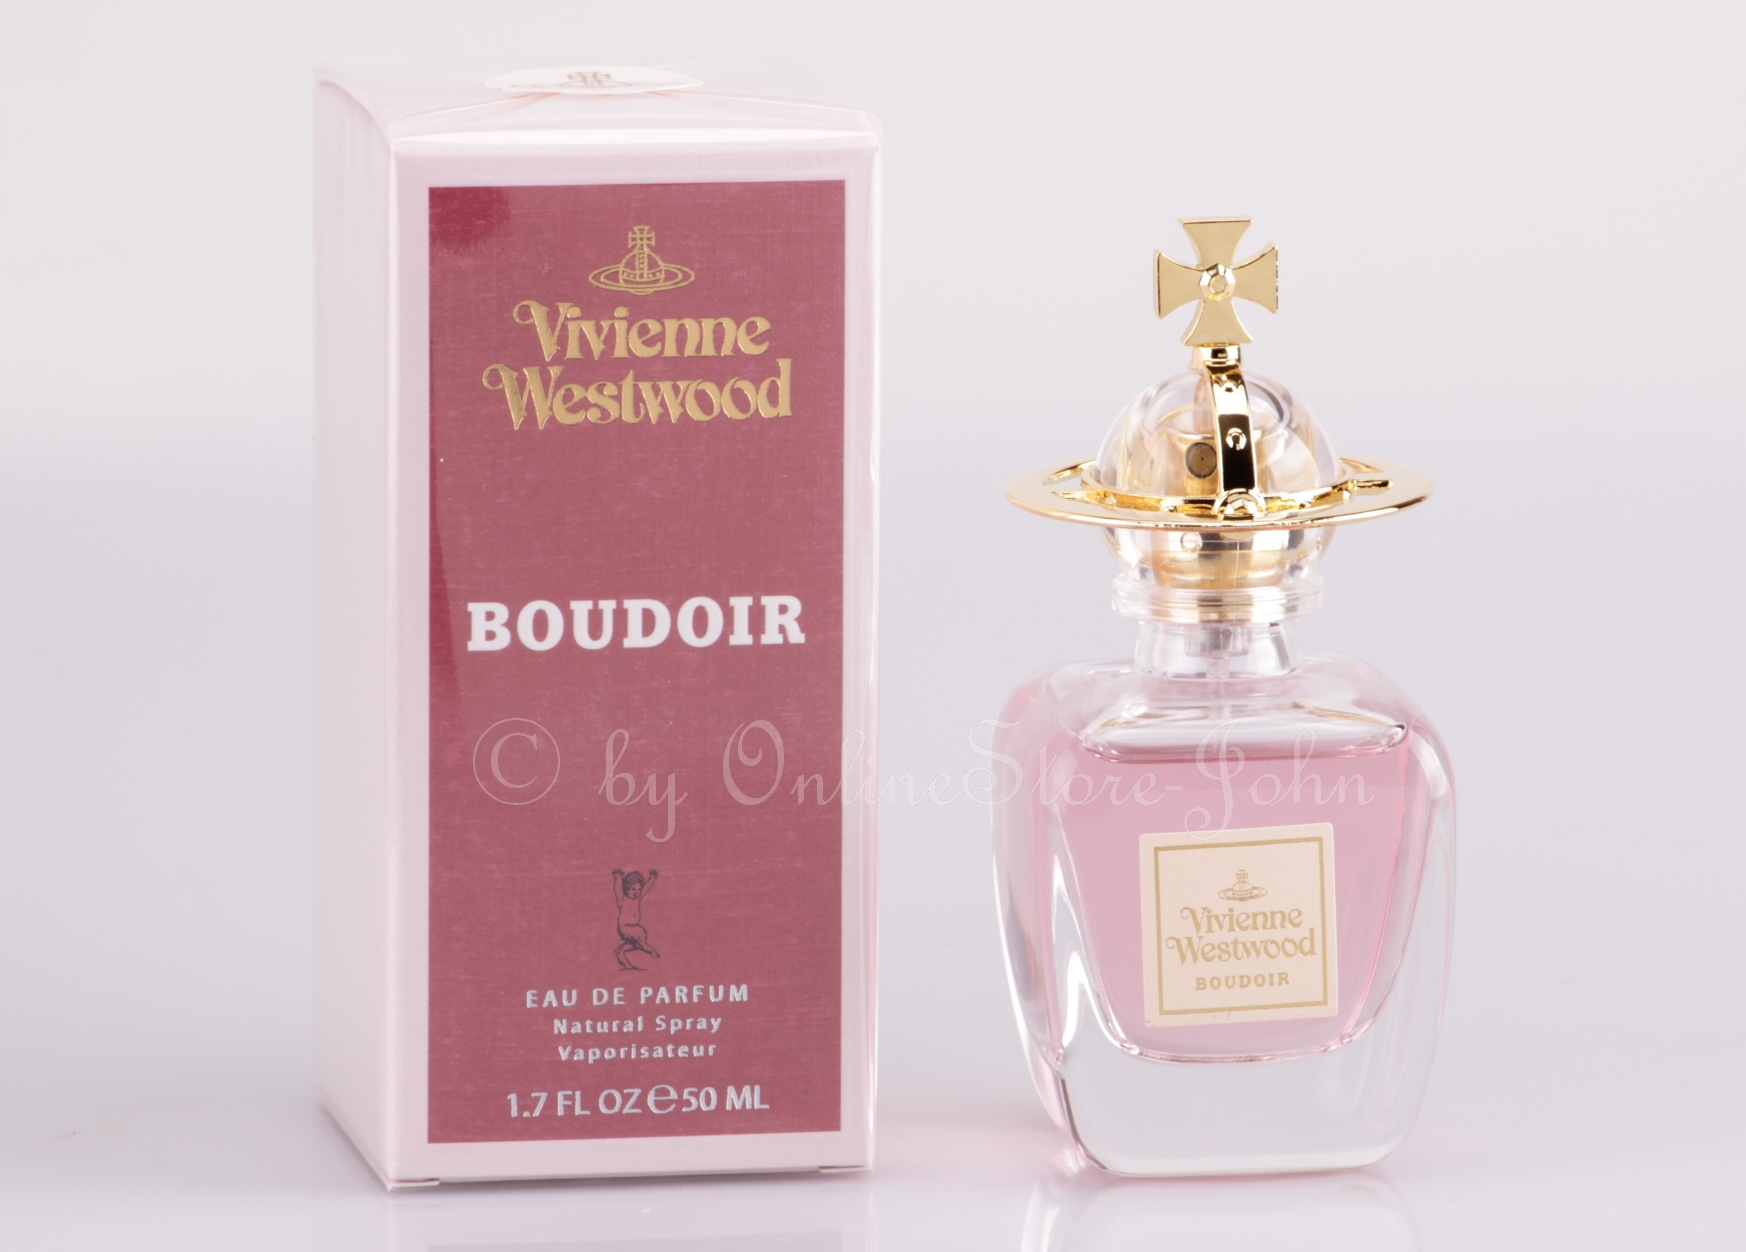 Vivienne Westwood - Boudoir - 50ml EDP Eau de Parfum